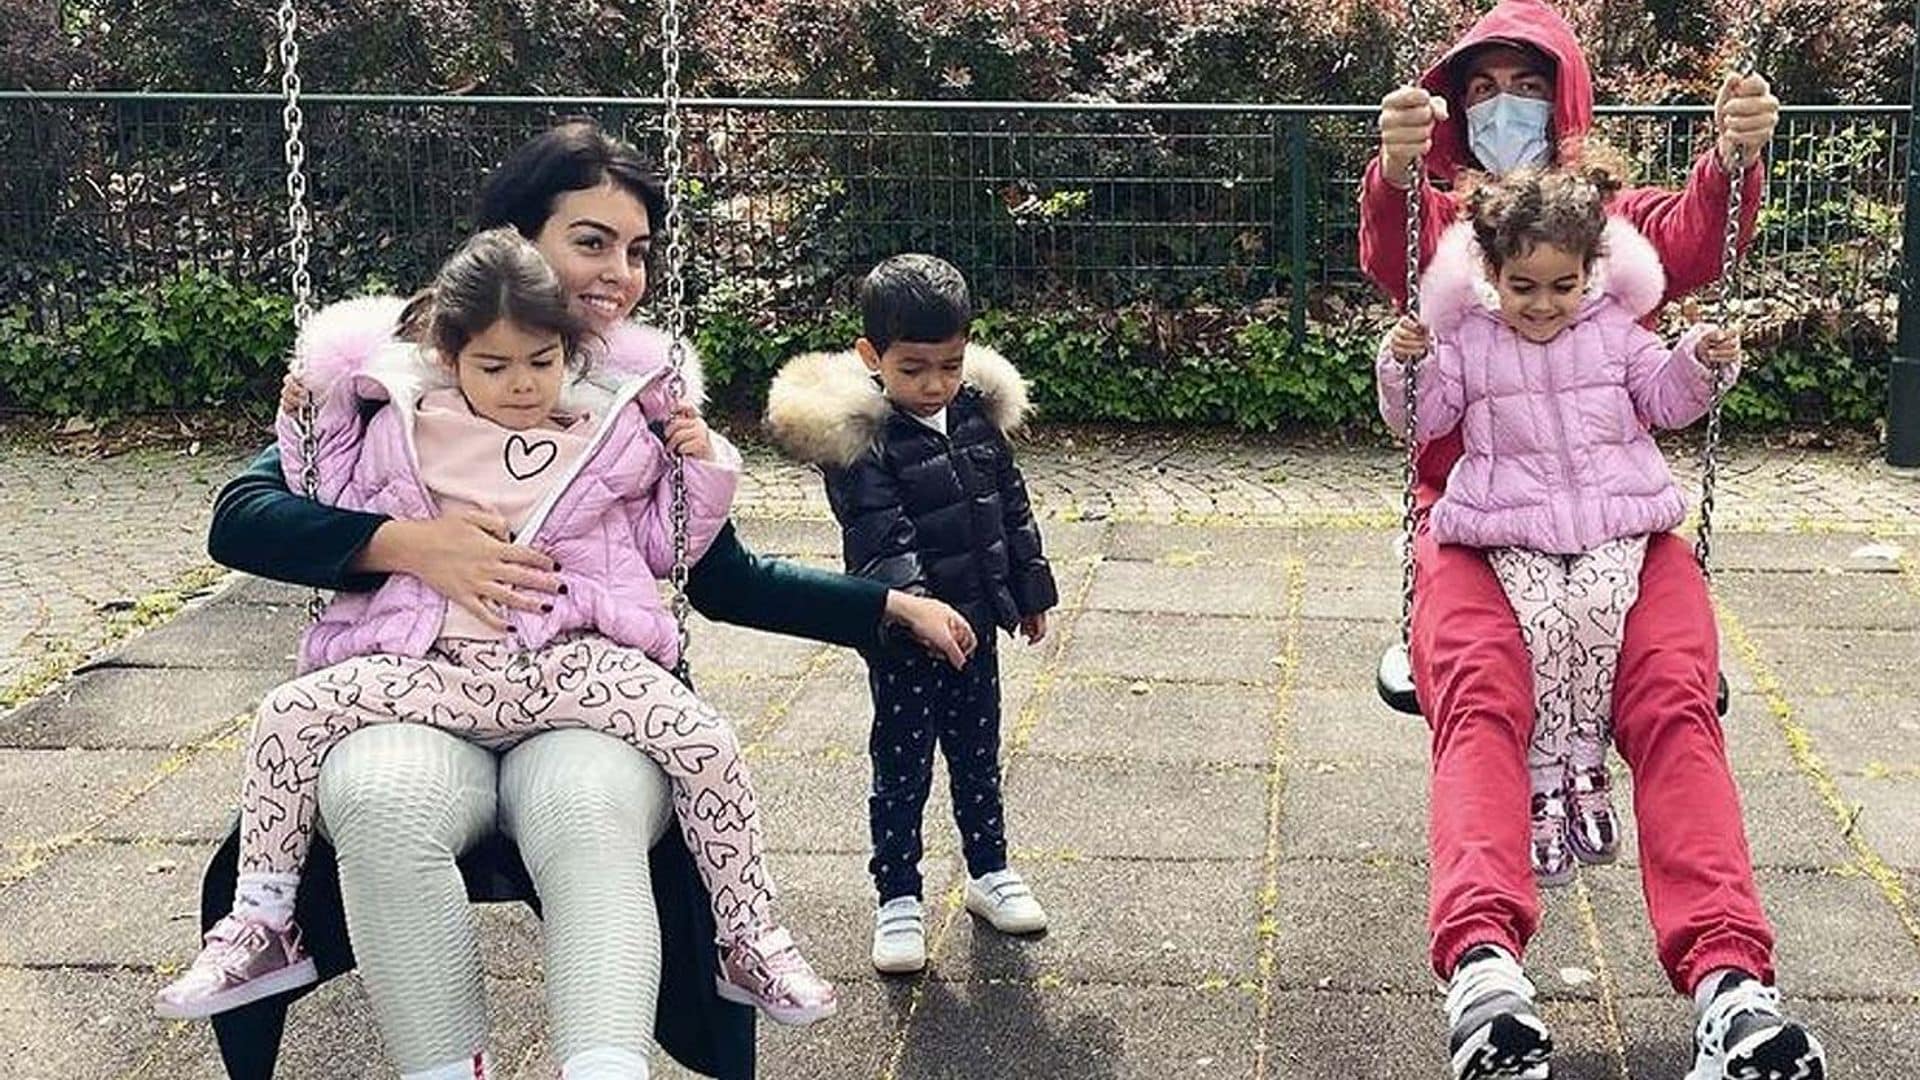 ¡Como niños! Georgina Rodríguez y Cristiano Ronaldo juegan en el parque con sus hijos